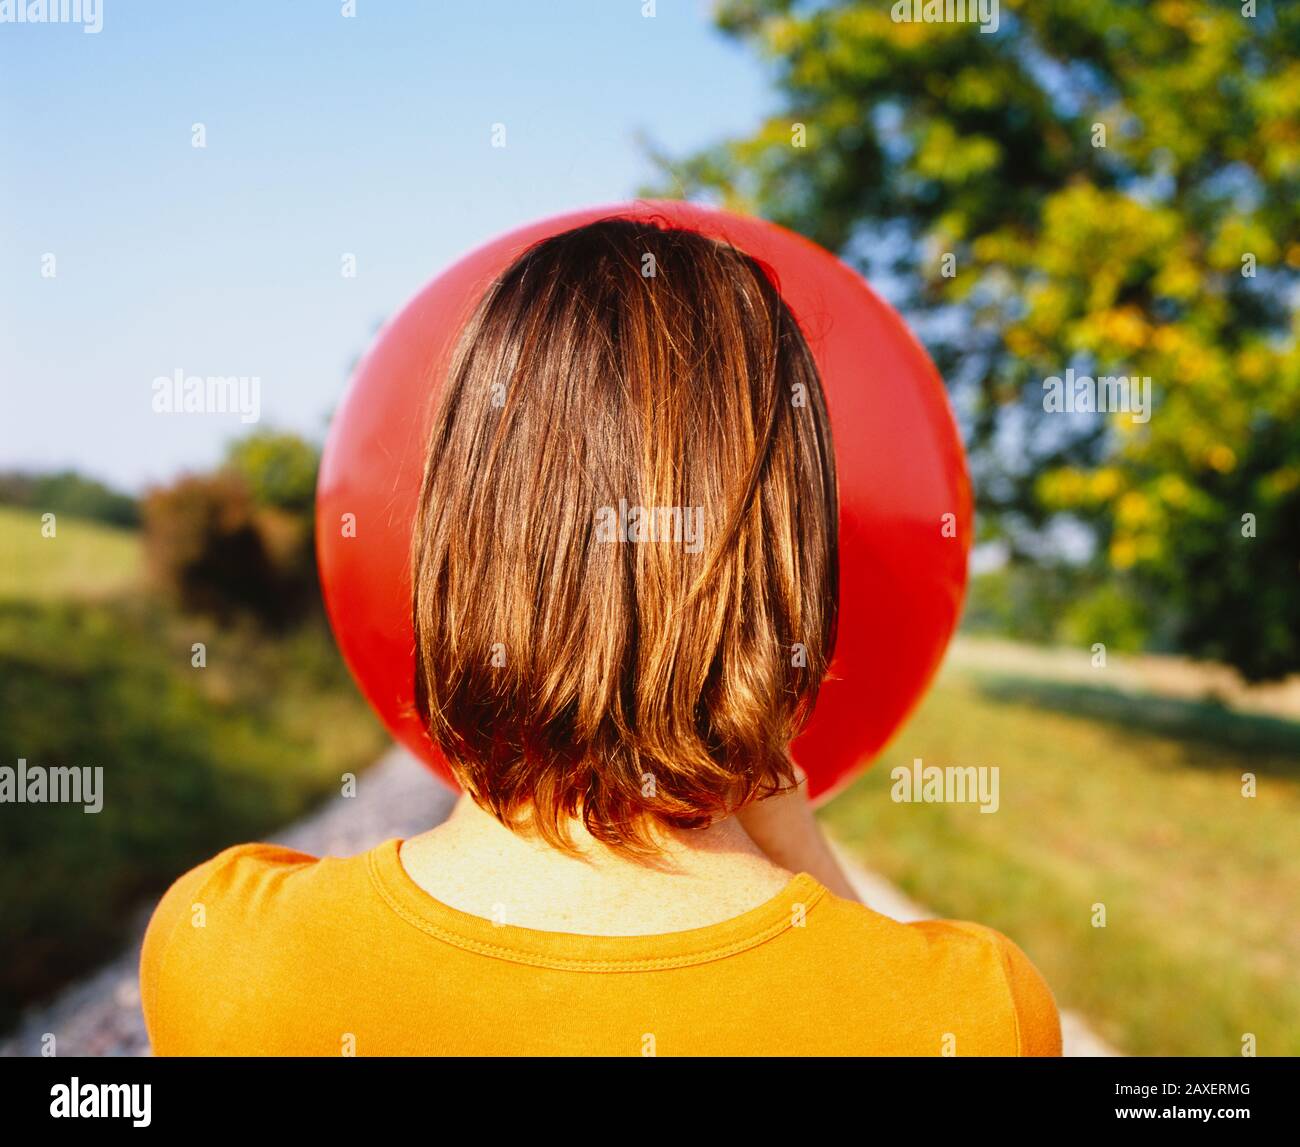 Vue arrière d'une femme qui souffle un ballon, Allemagne Photo Stock - Alamy